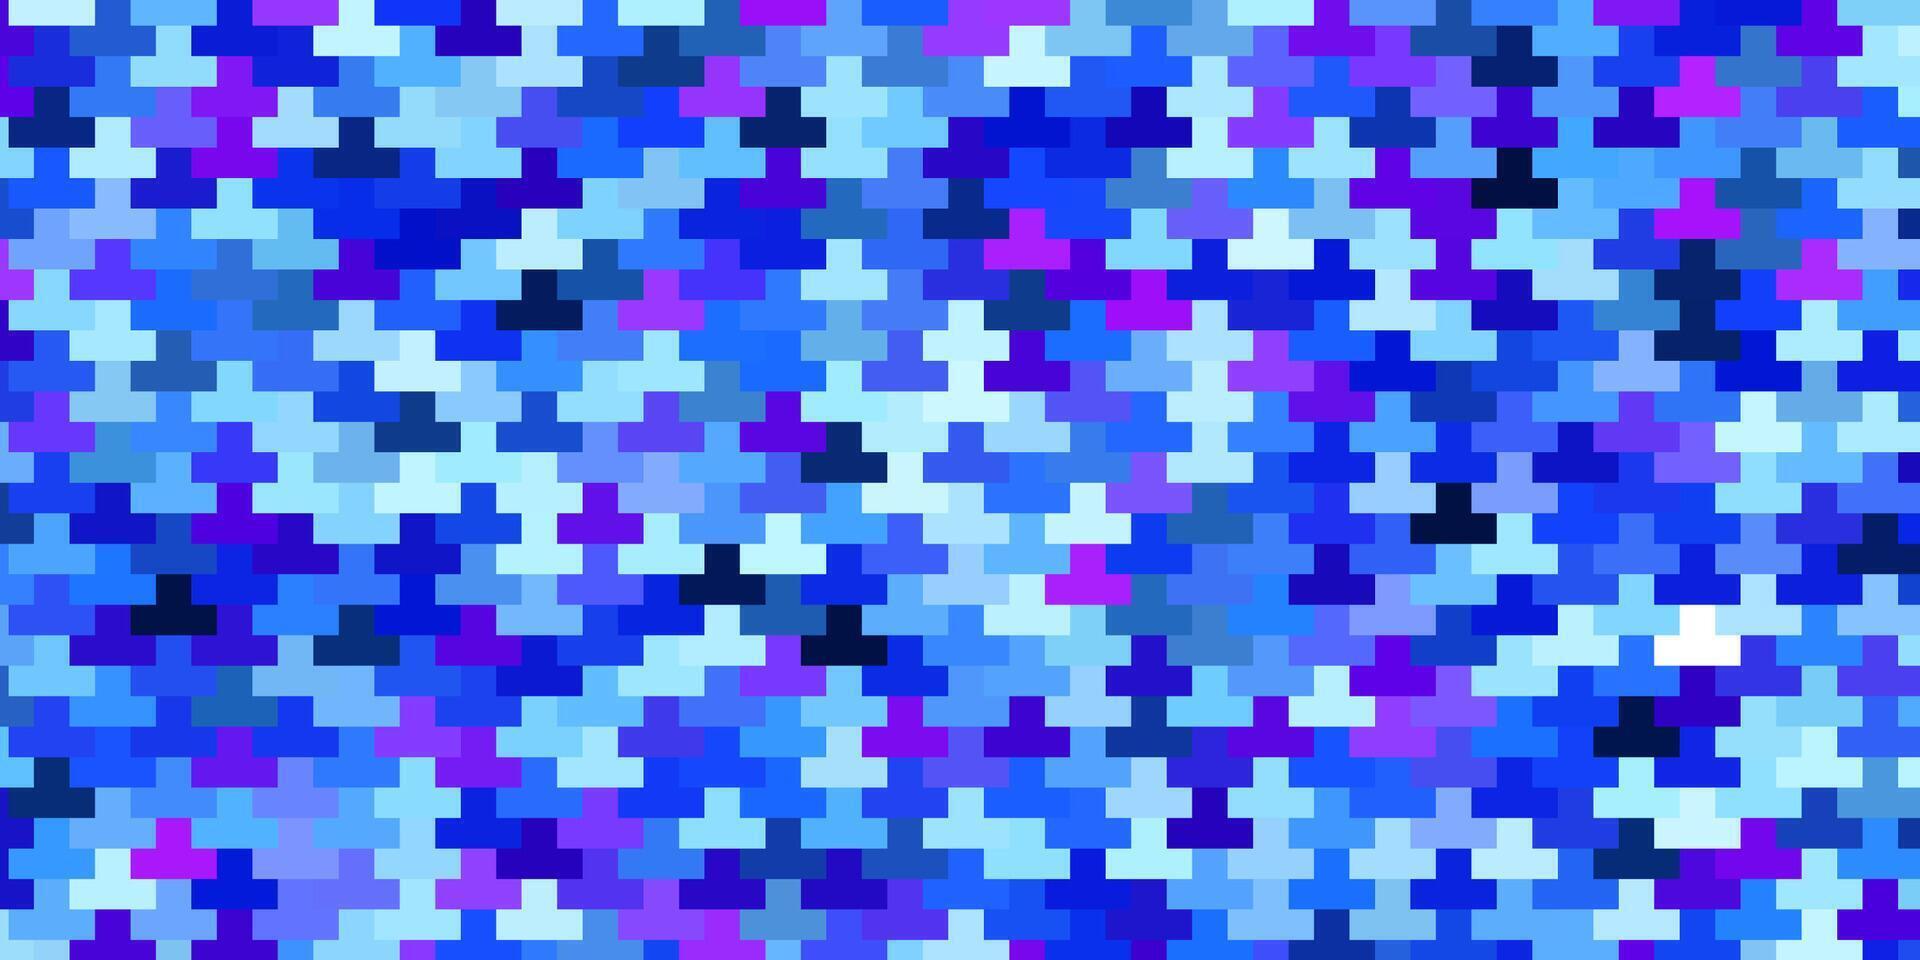 Fondo de vector rosa claro, azul en estilo poligonal.